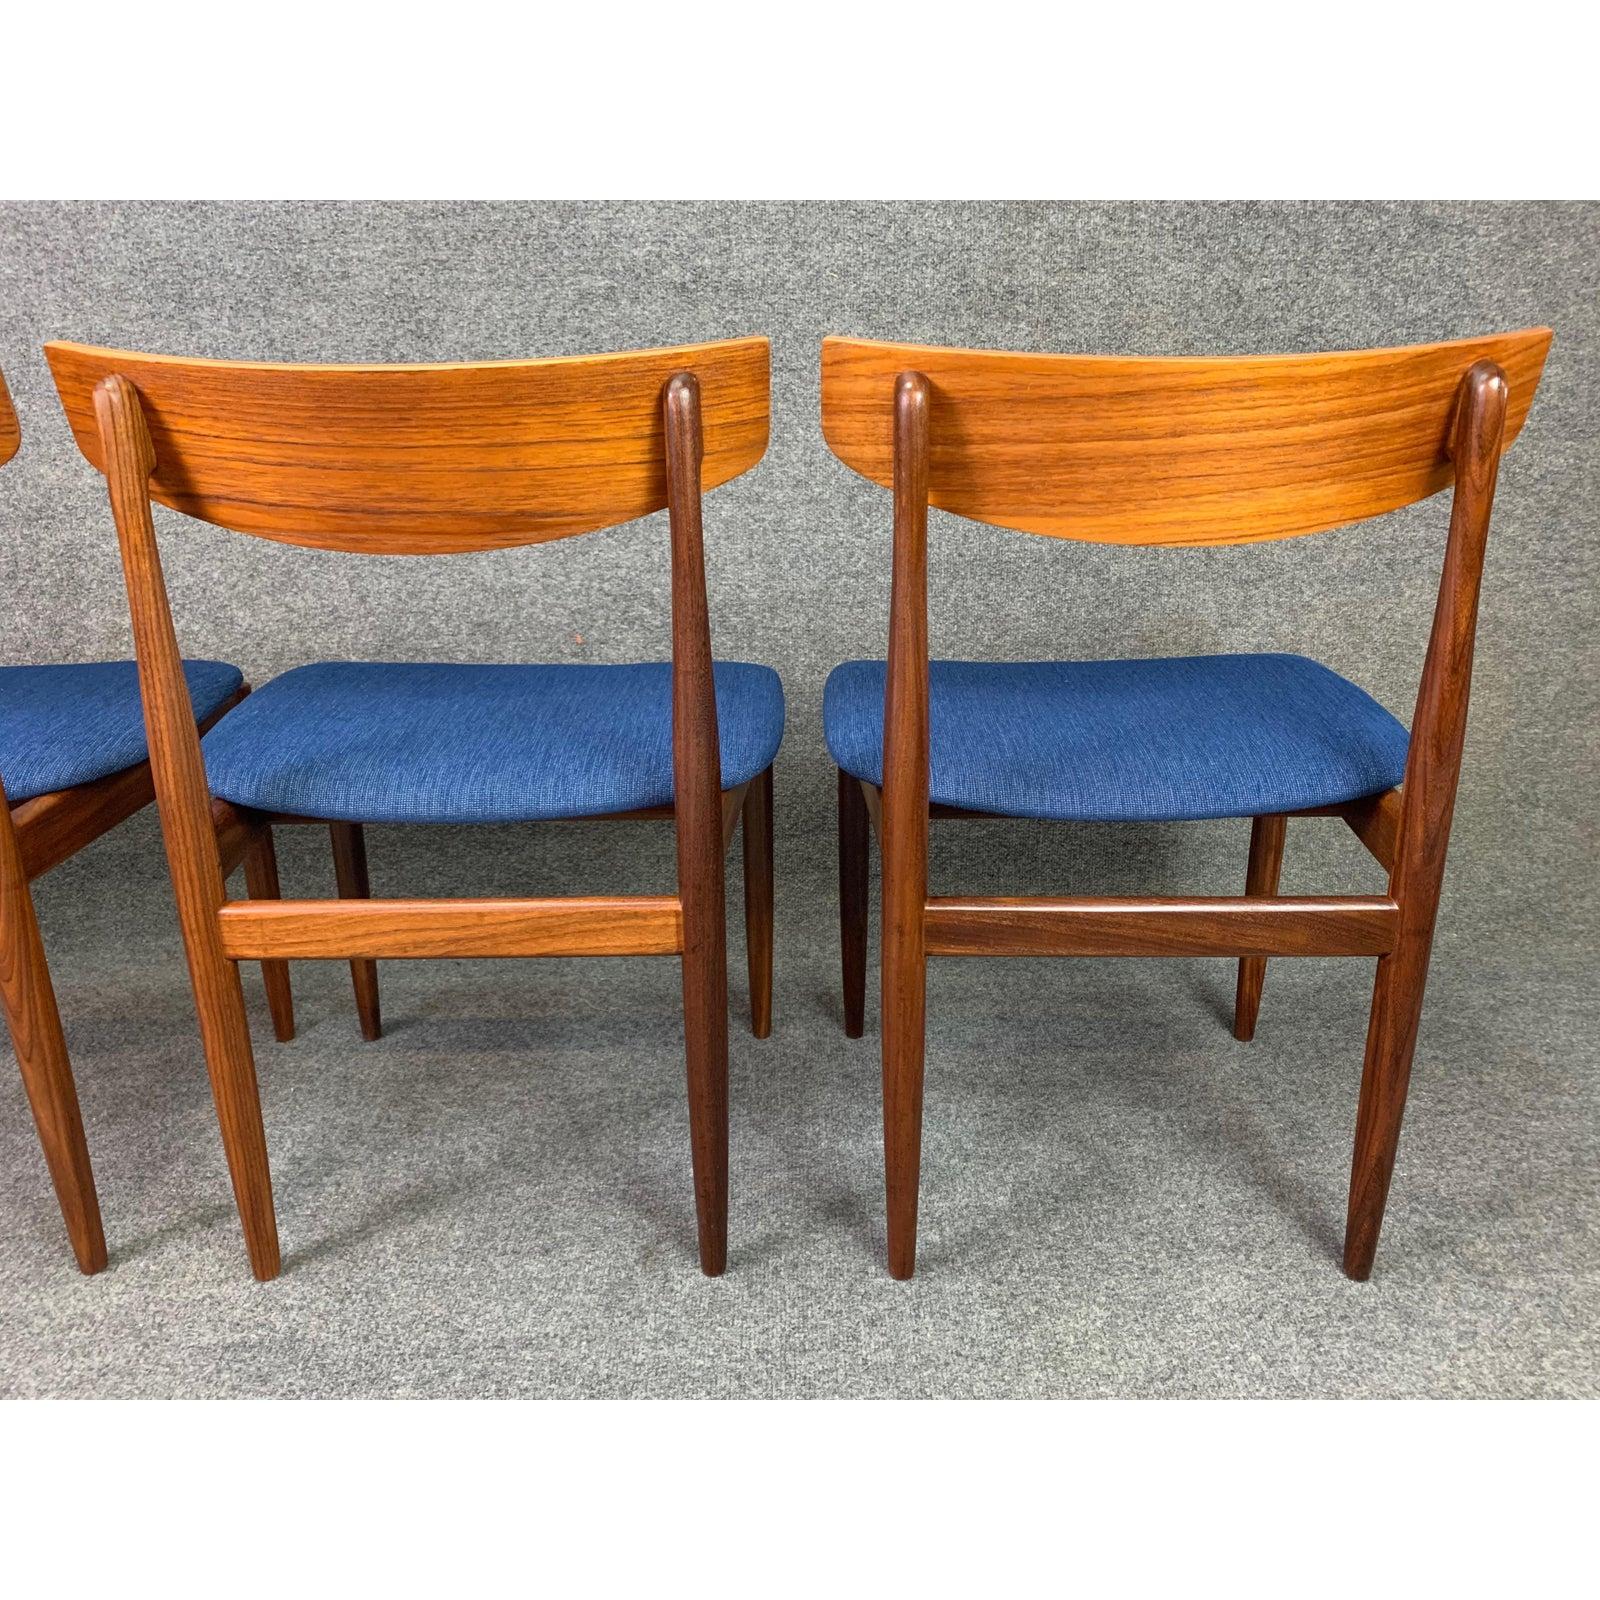 Set of 4 Vintage British Midcentury Teak Dining Chairs by Kofod Larsen & G Plan 1